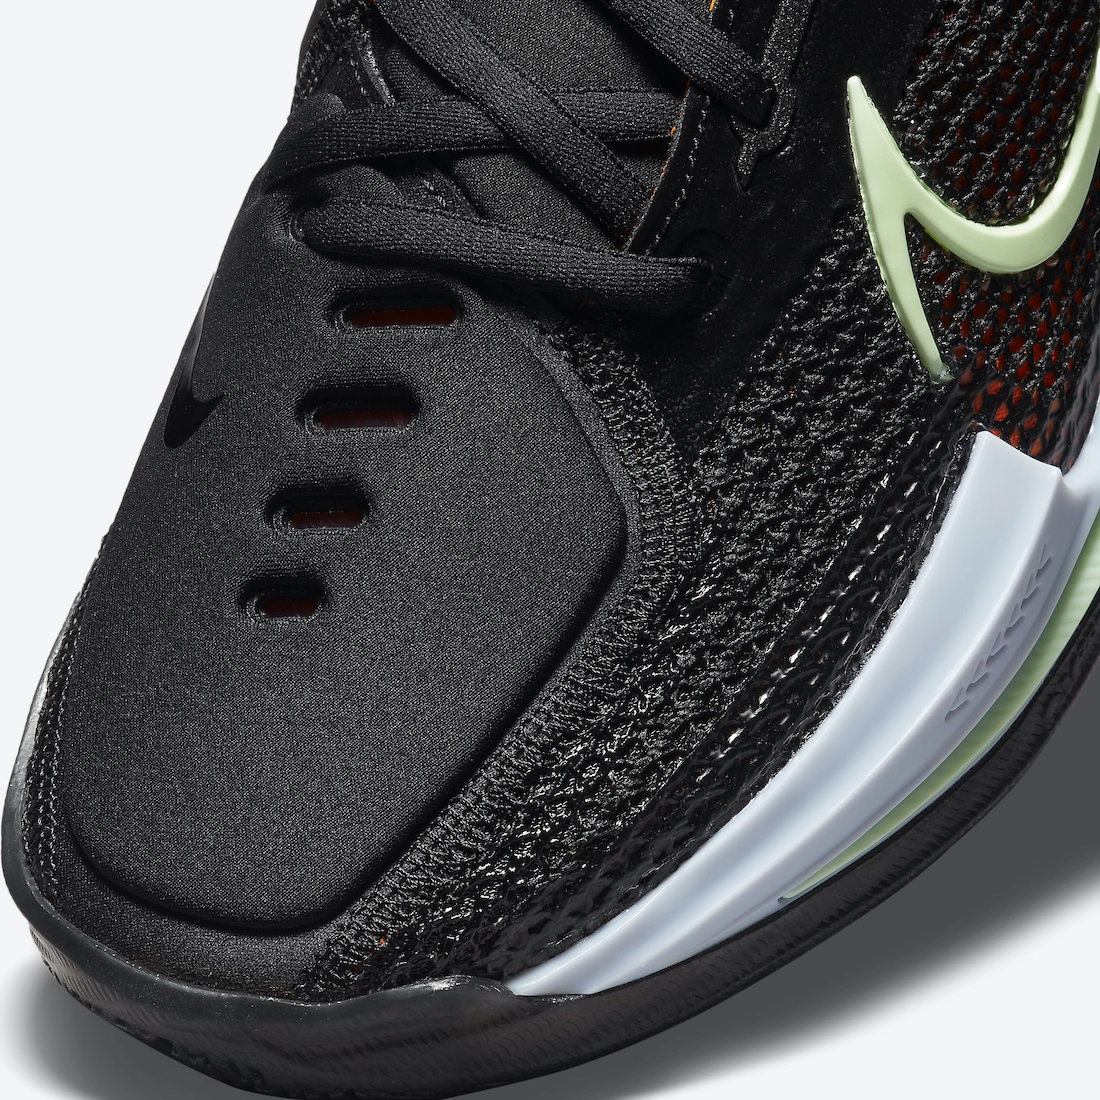 Nike Zoom GT Cut CZ0175-001 Release Date - Sneaker Bar Detroit